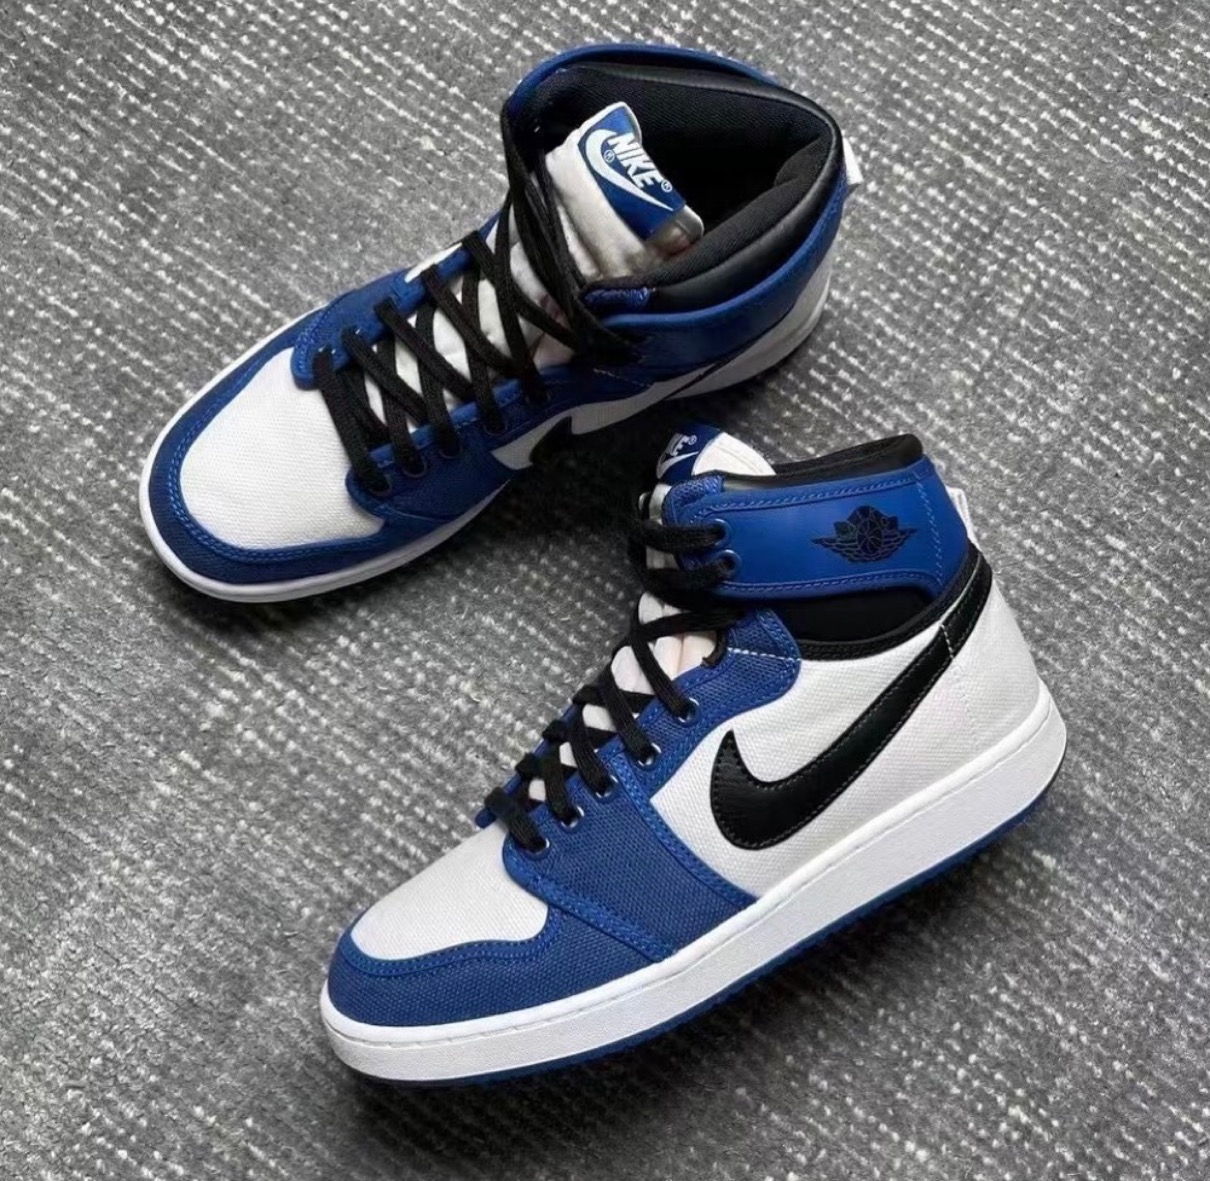 Nike】Air Jordan 1 KO “Storm Blue”が国内9月8日に発売予定